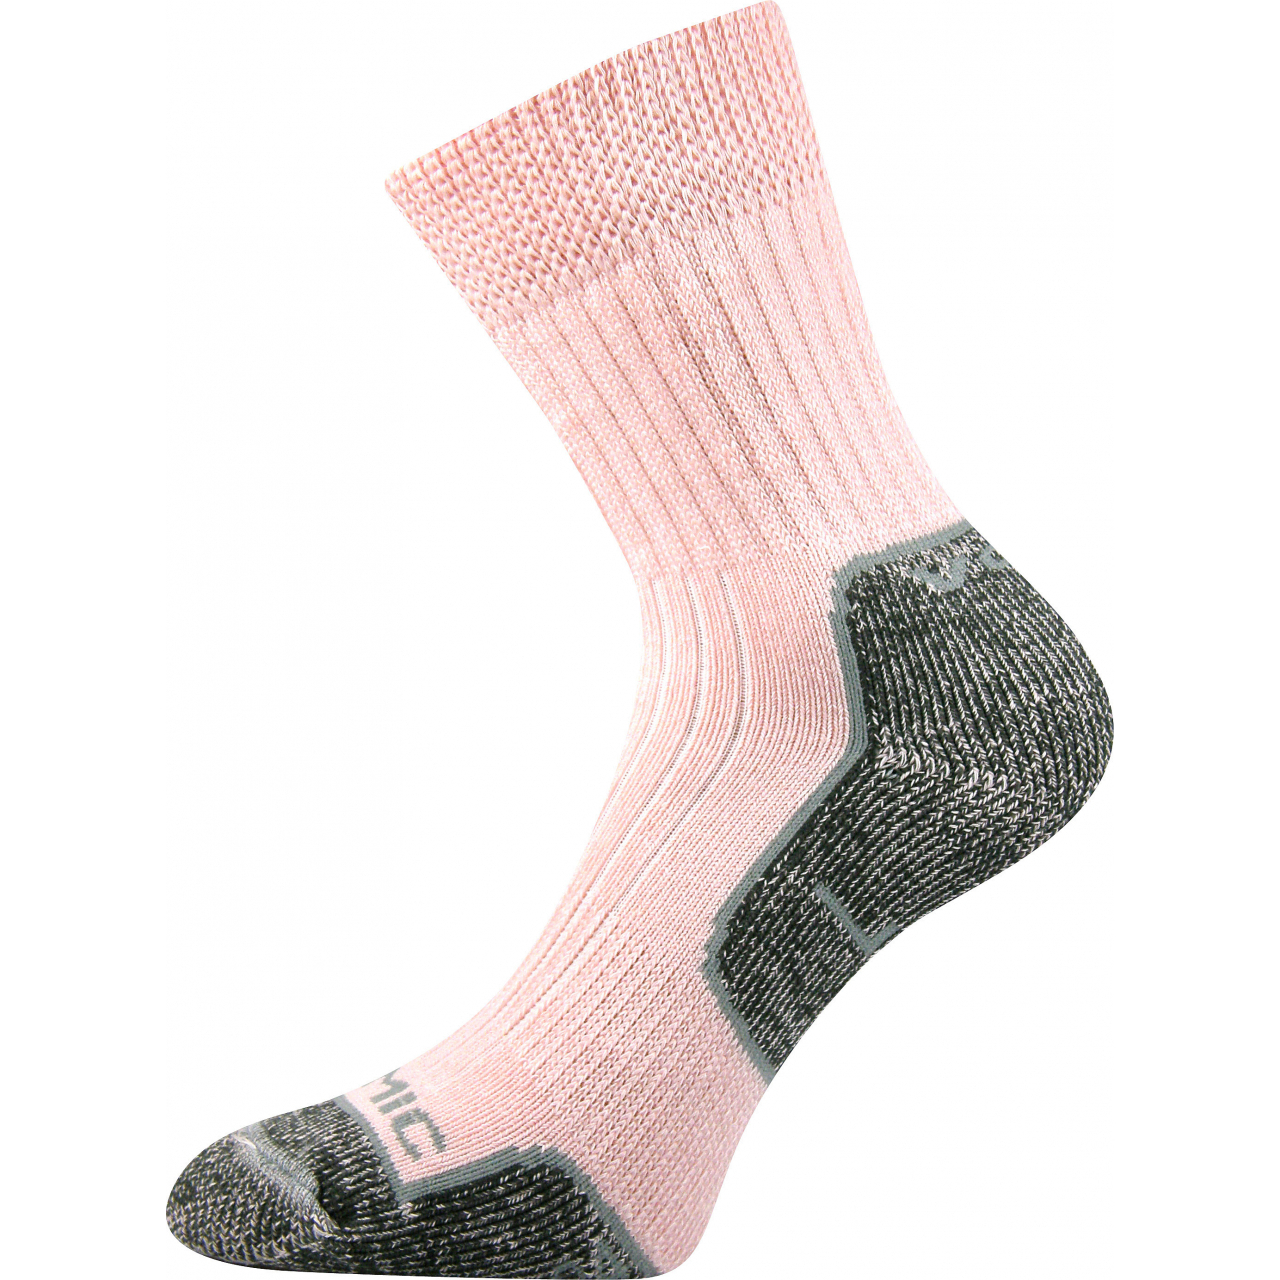 Ponožky unisex termo Voxx Zenith L + P - světle růžové-šedé, 35-37